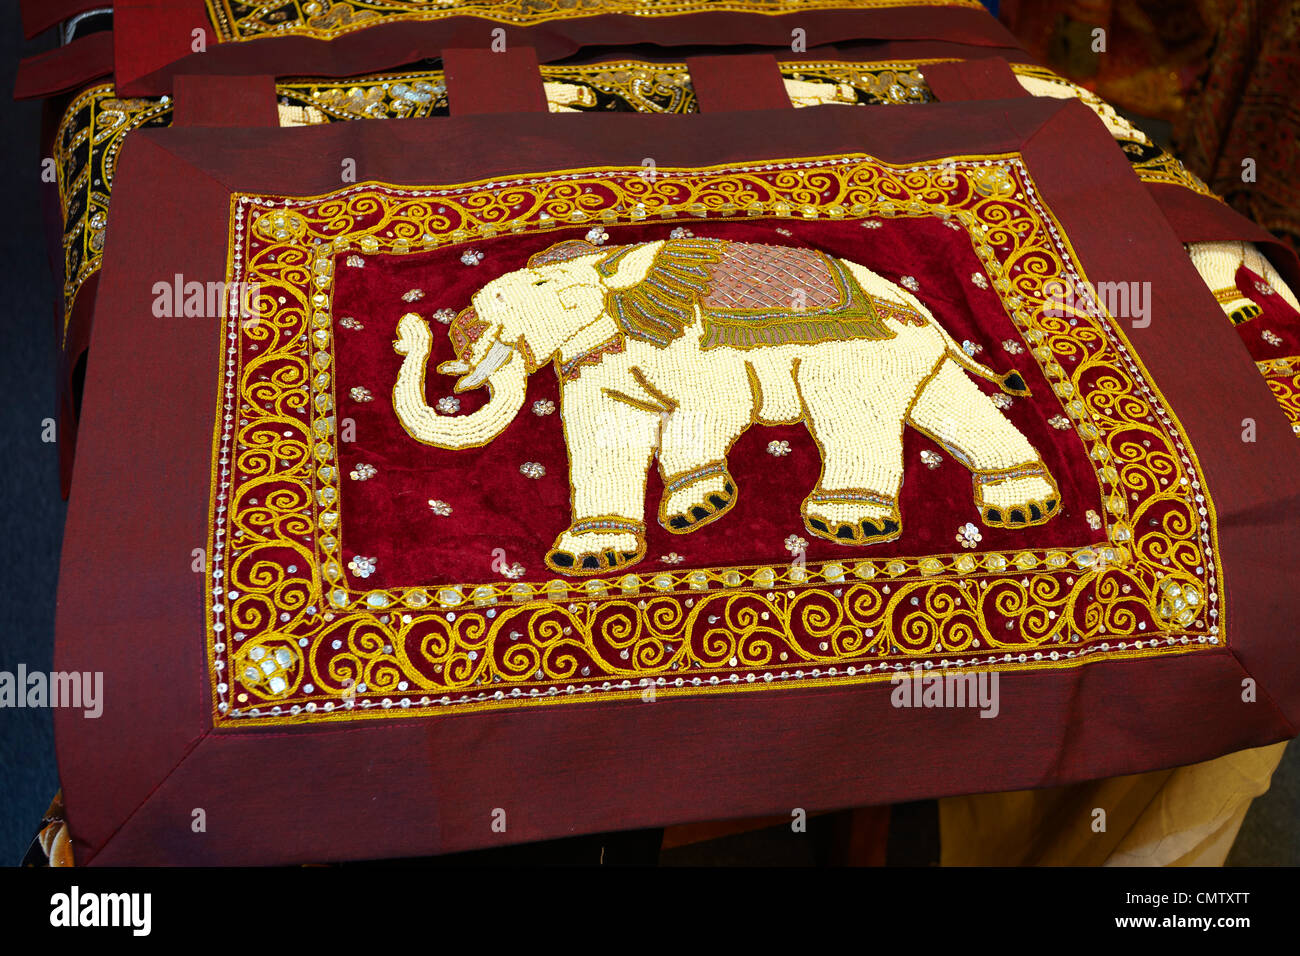 Sri Lanka - Kandy, negozio con materiali decorativi, art deco, arte popolare negozio di souvenir dallo Sri Lanka Foto Stock